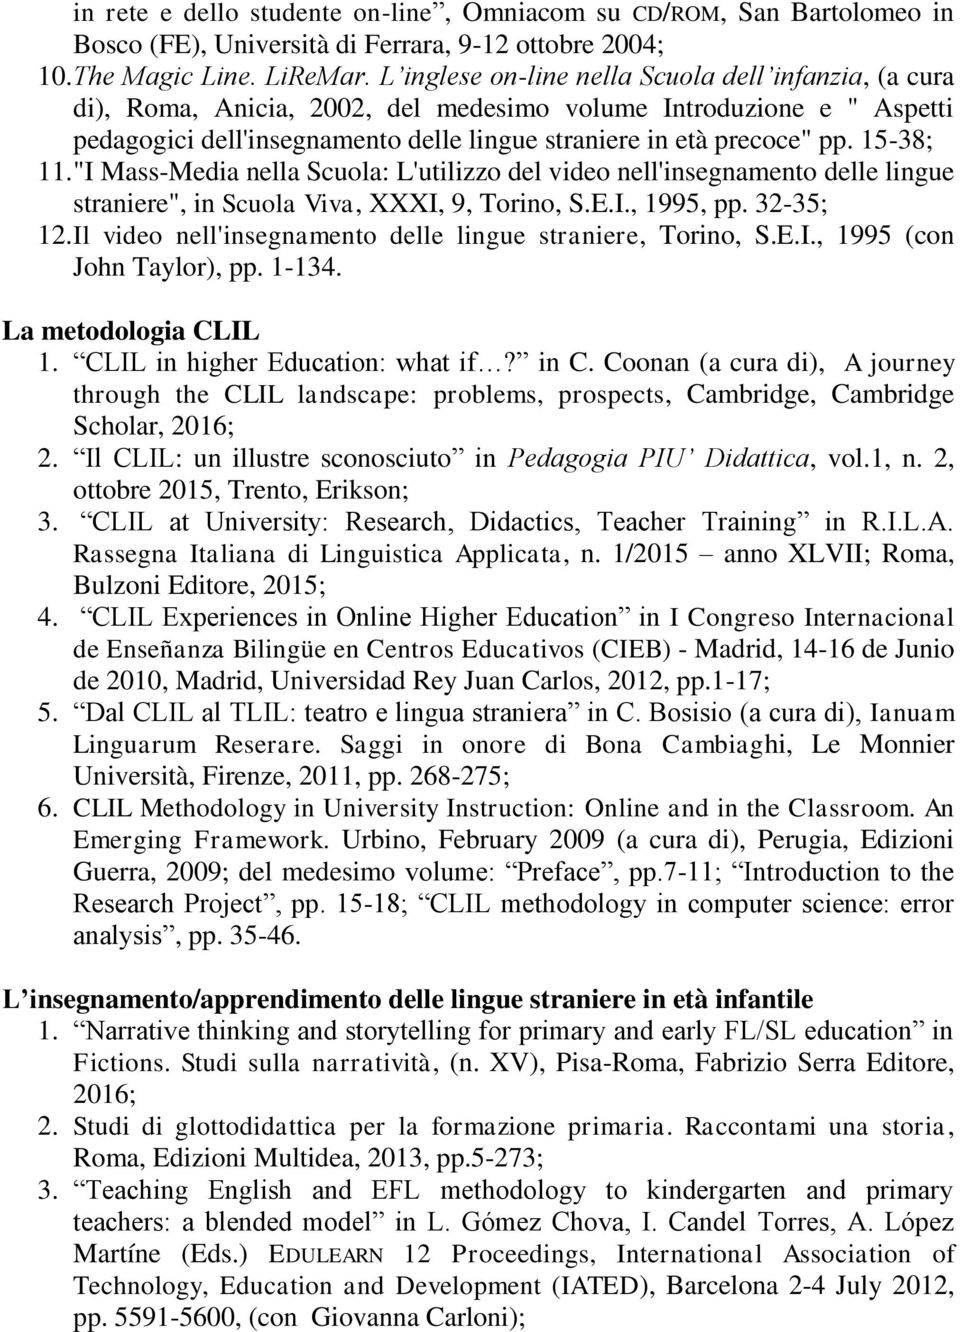 15-38; 11. "I Mass-Media nella Scuola: L'utilizzo del video nell'insegnamento delle lingue straniere", in Scuola Viva, XXXI, 9, Torino, S.E.I., 1995, pp. 32-35; 12.